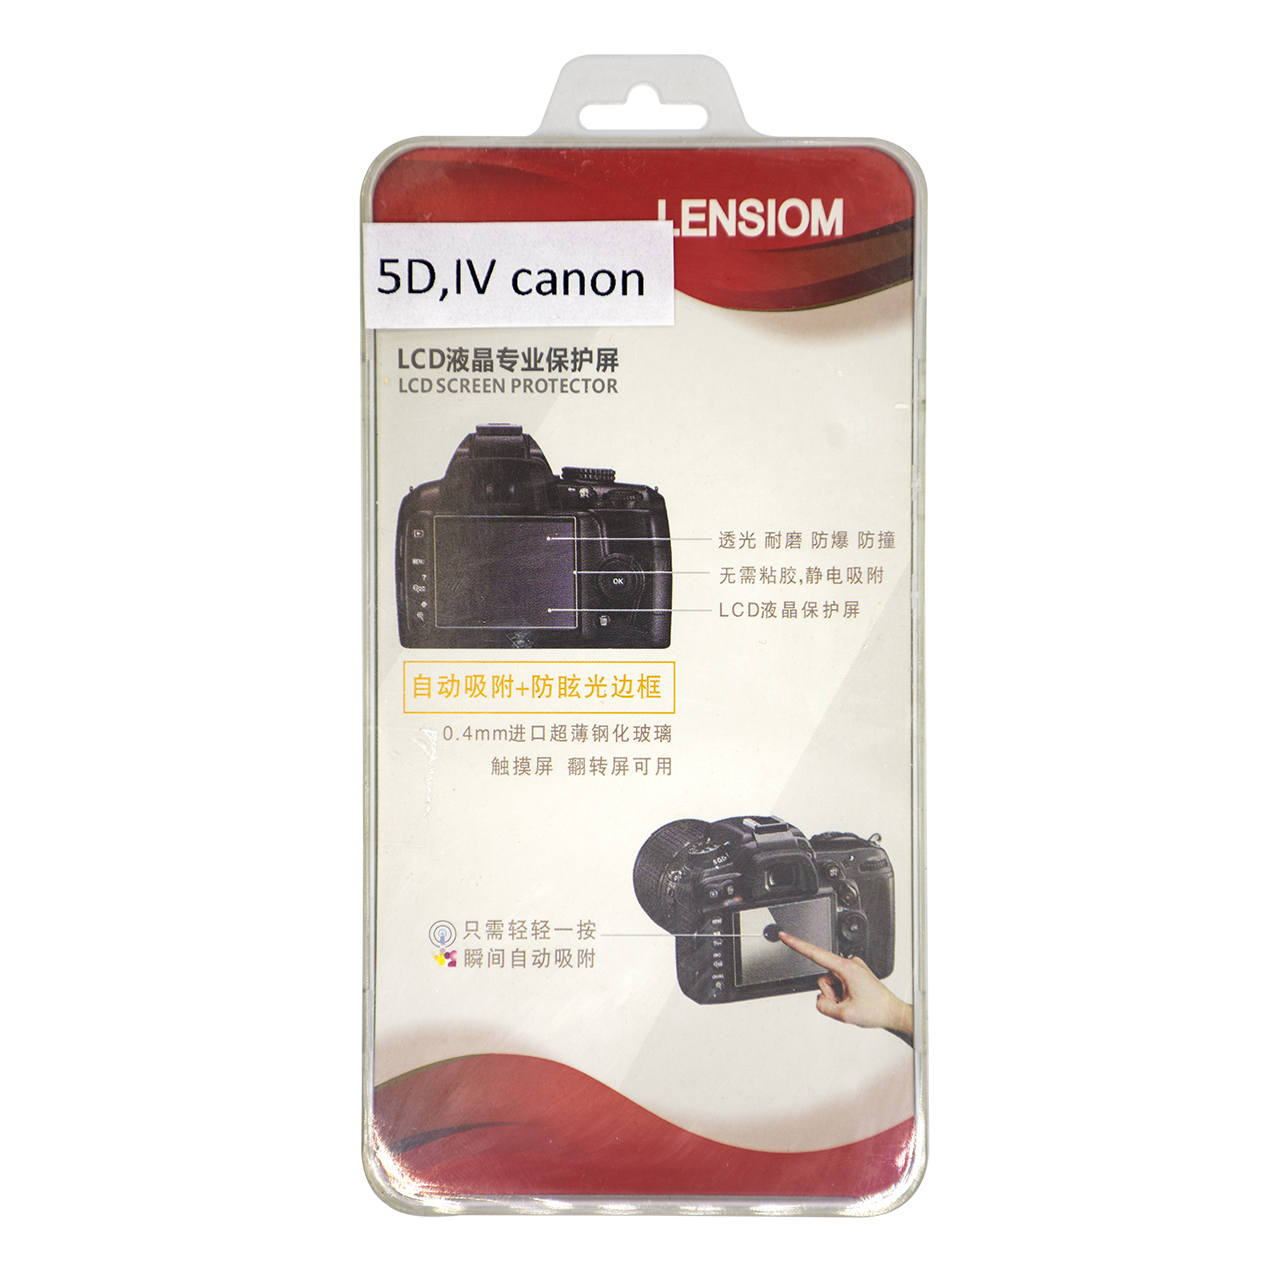 محافظ صفحه نمایش دوربین لنزیوم مدل L5DIV مناسب برای کانن 5D IV